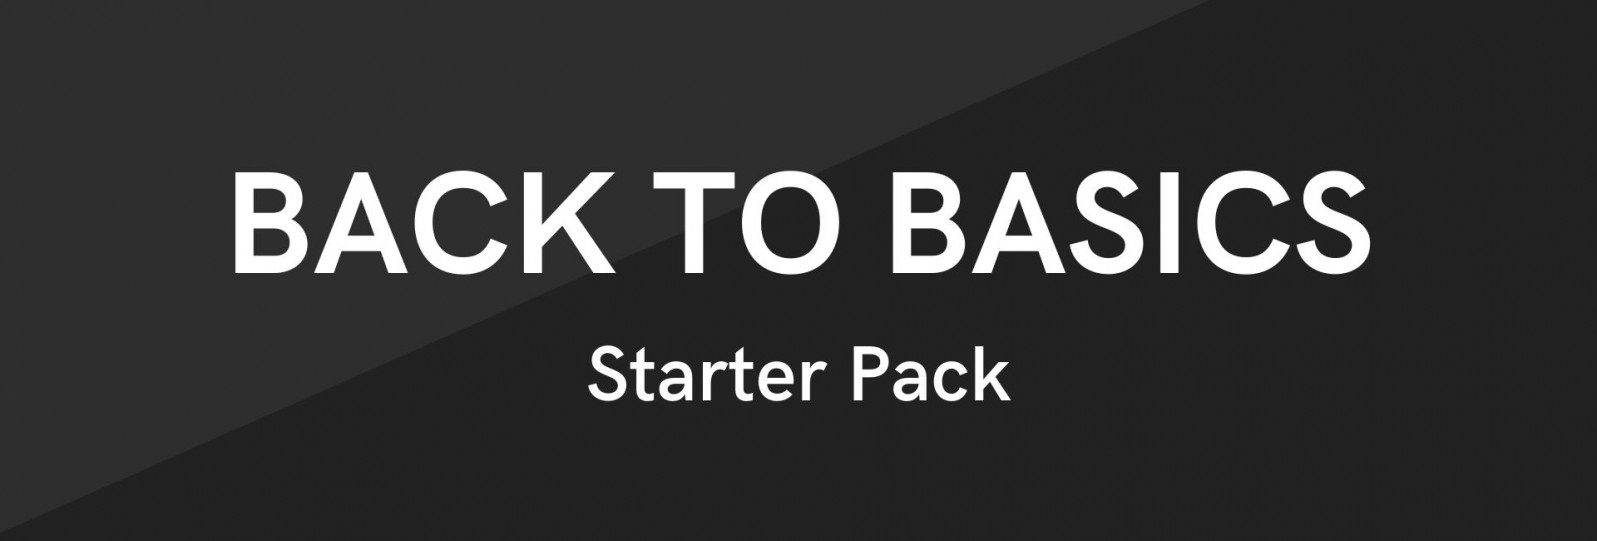 Back to Basics - Starter Pack